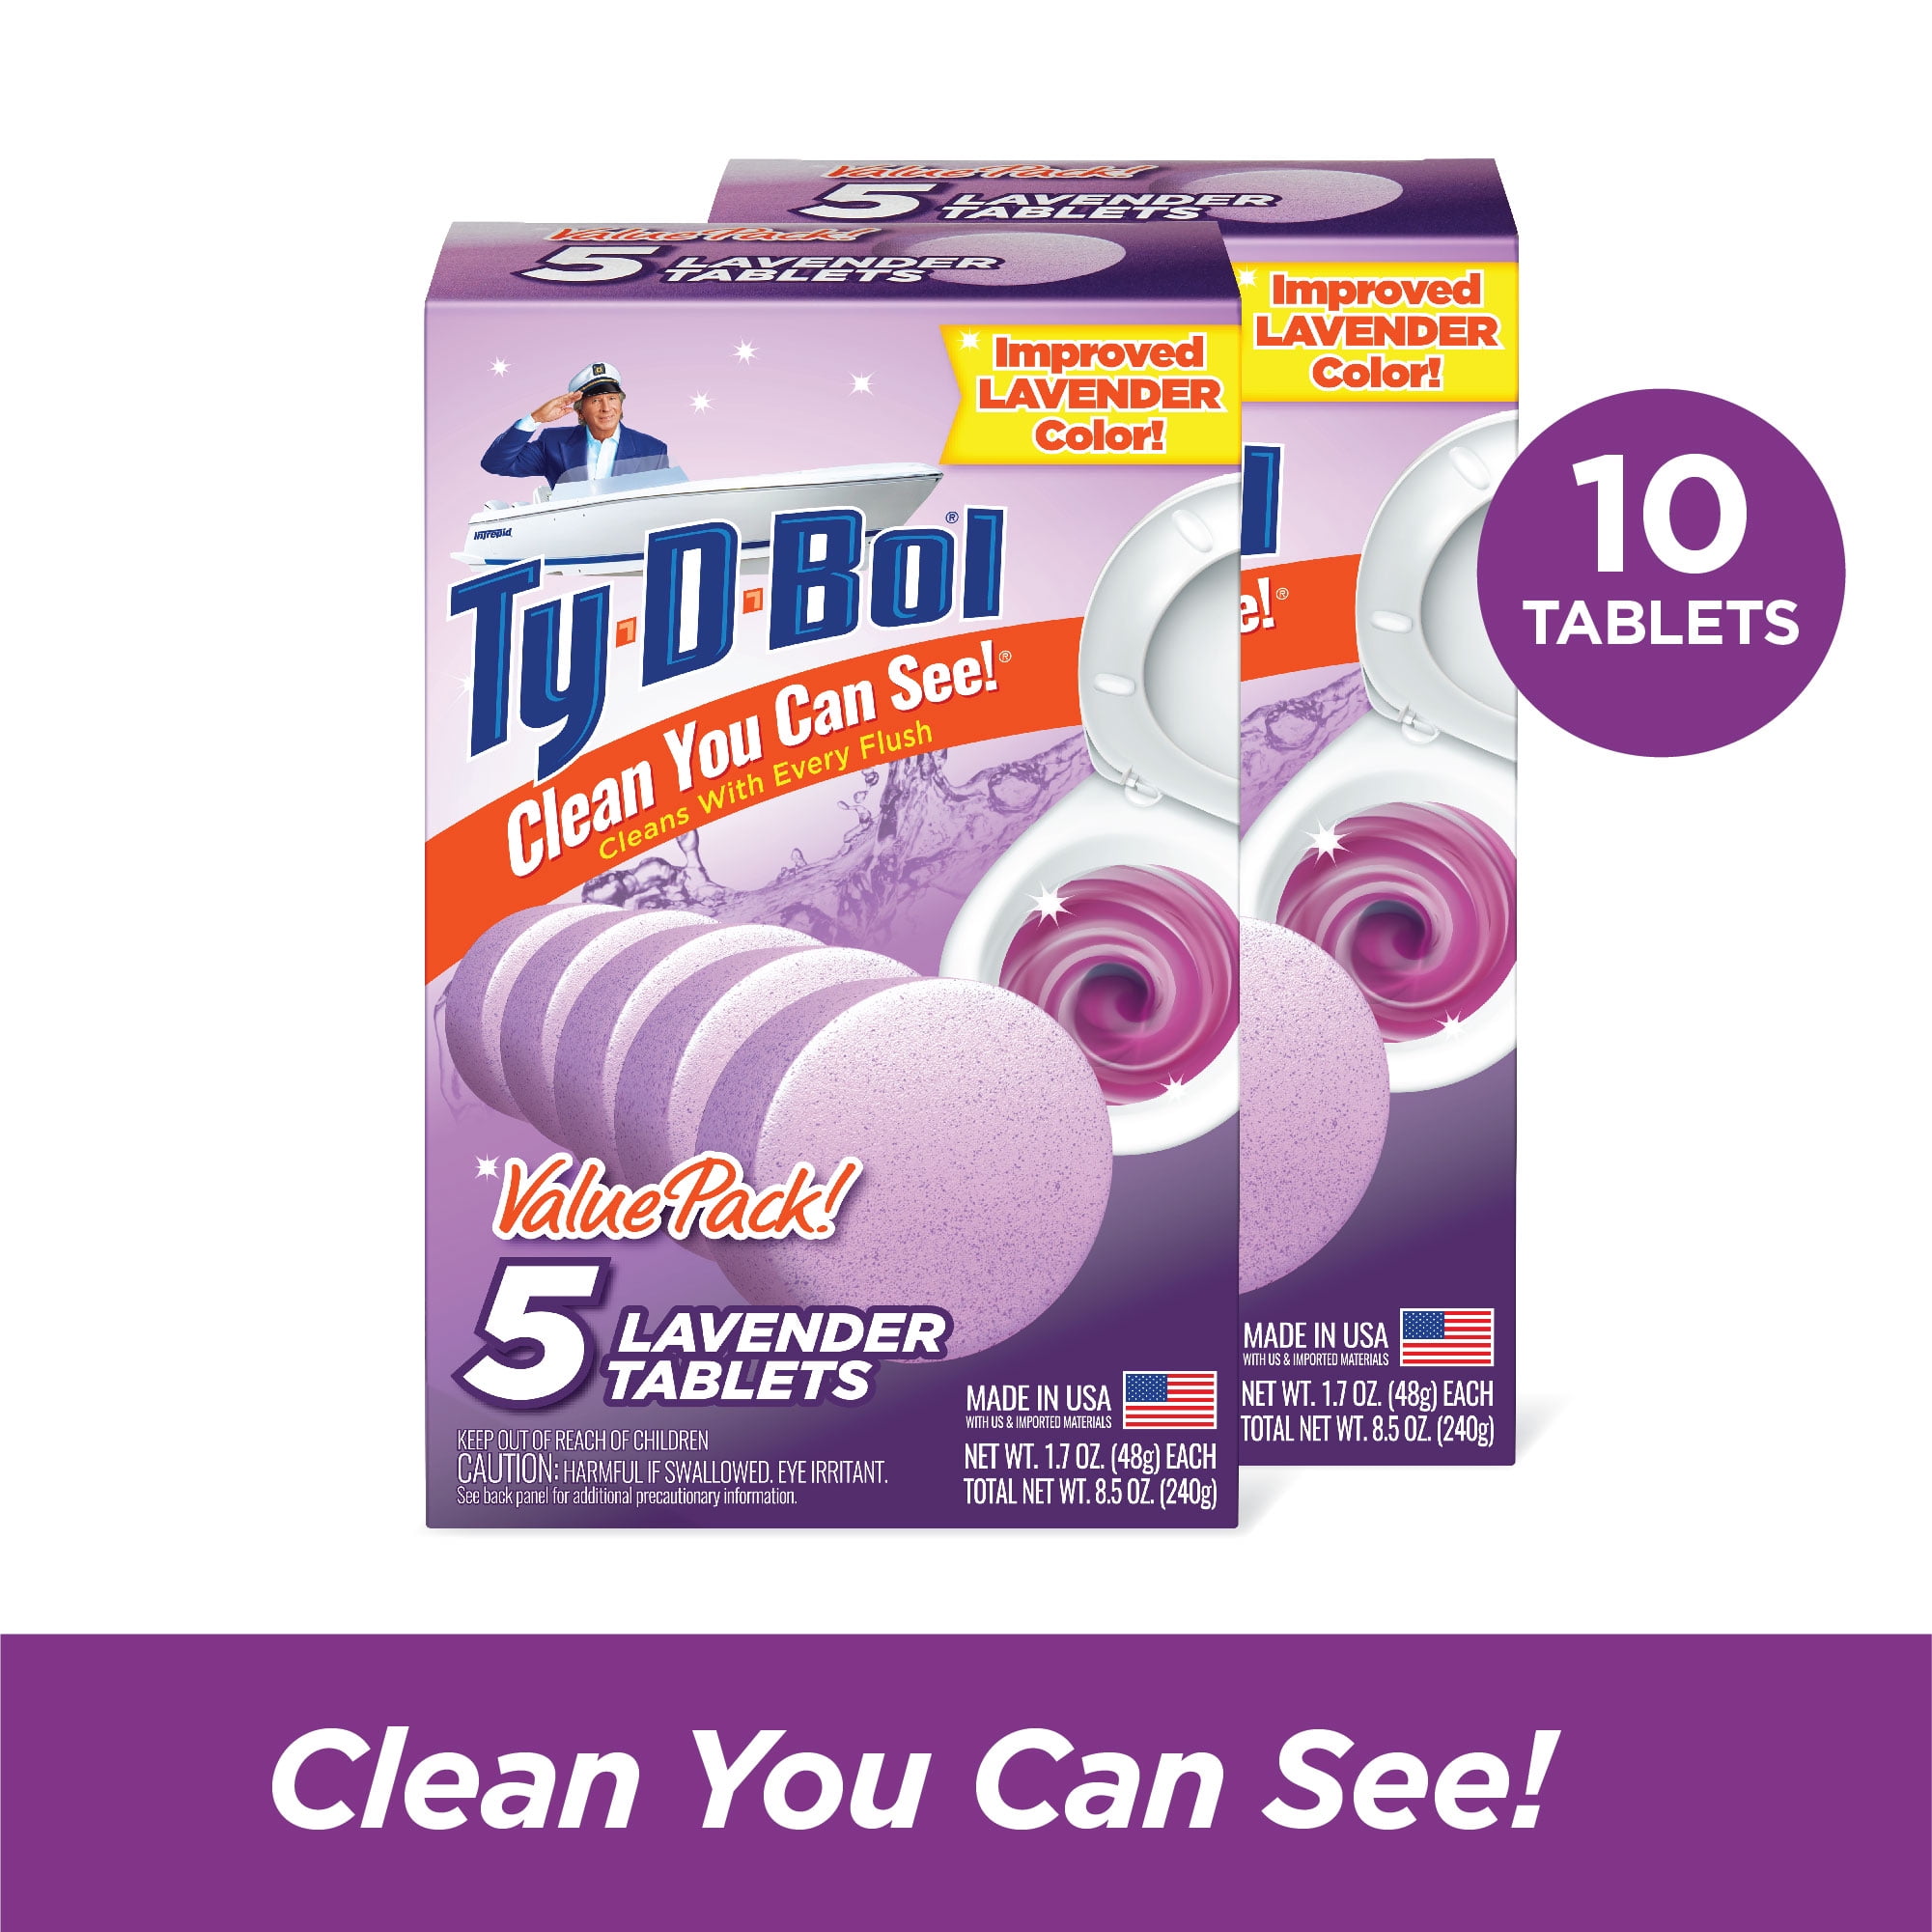 los van knoflook Harde wind 2 Pack) Ty-D-Bol Toilet Cleaner, Lavender Toilet Bowl Cleaner Tablet, 1.7  oz, 5 Ct - Walmart.com